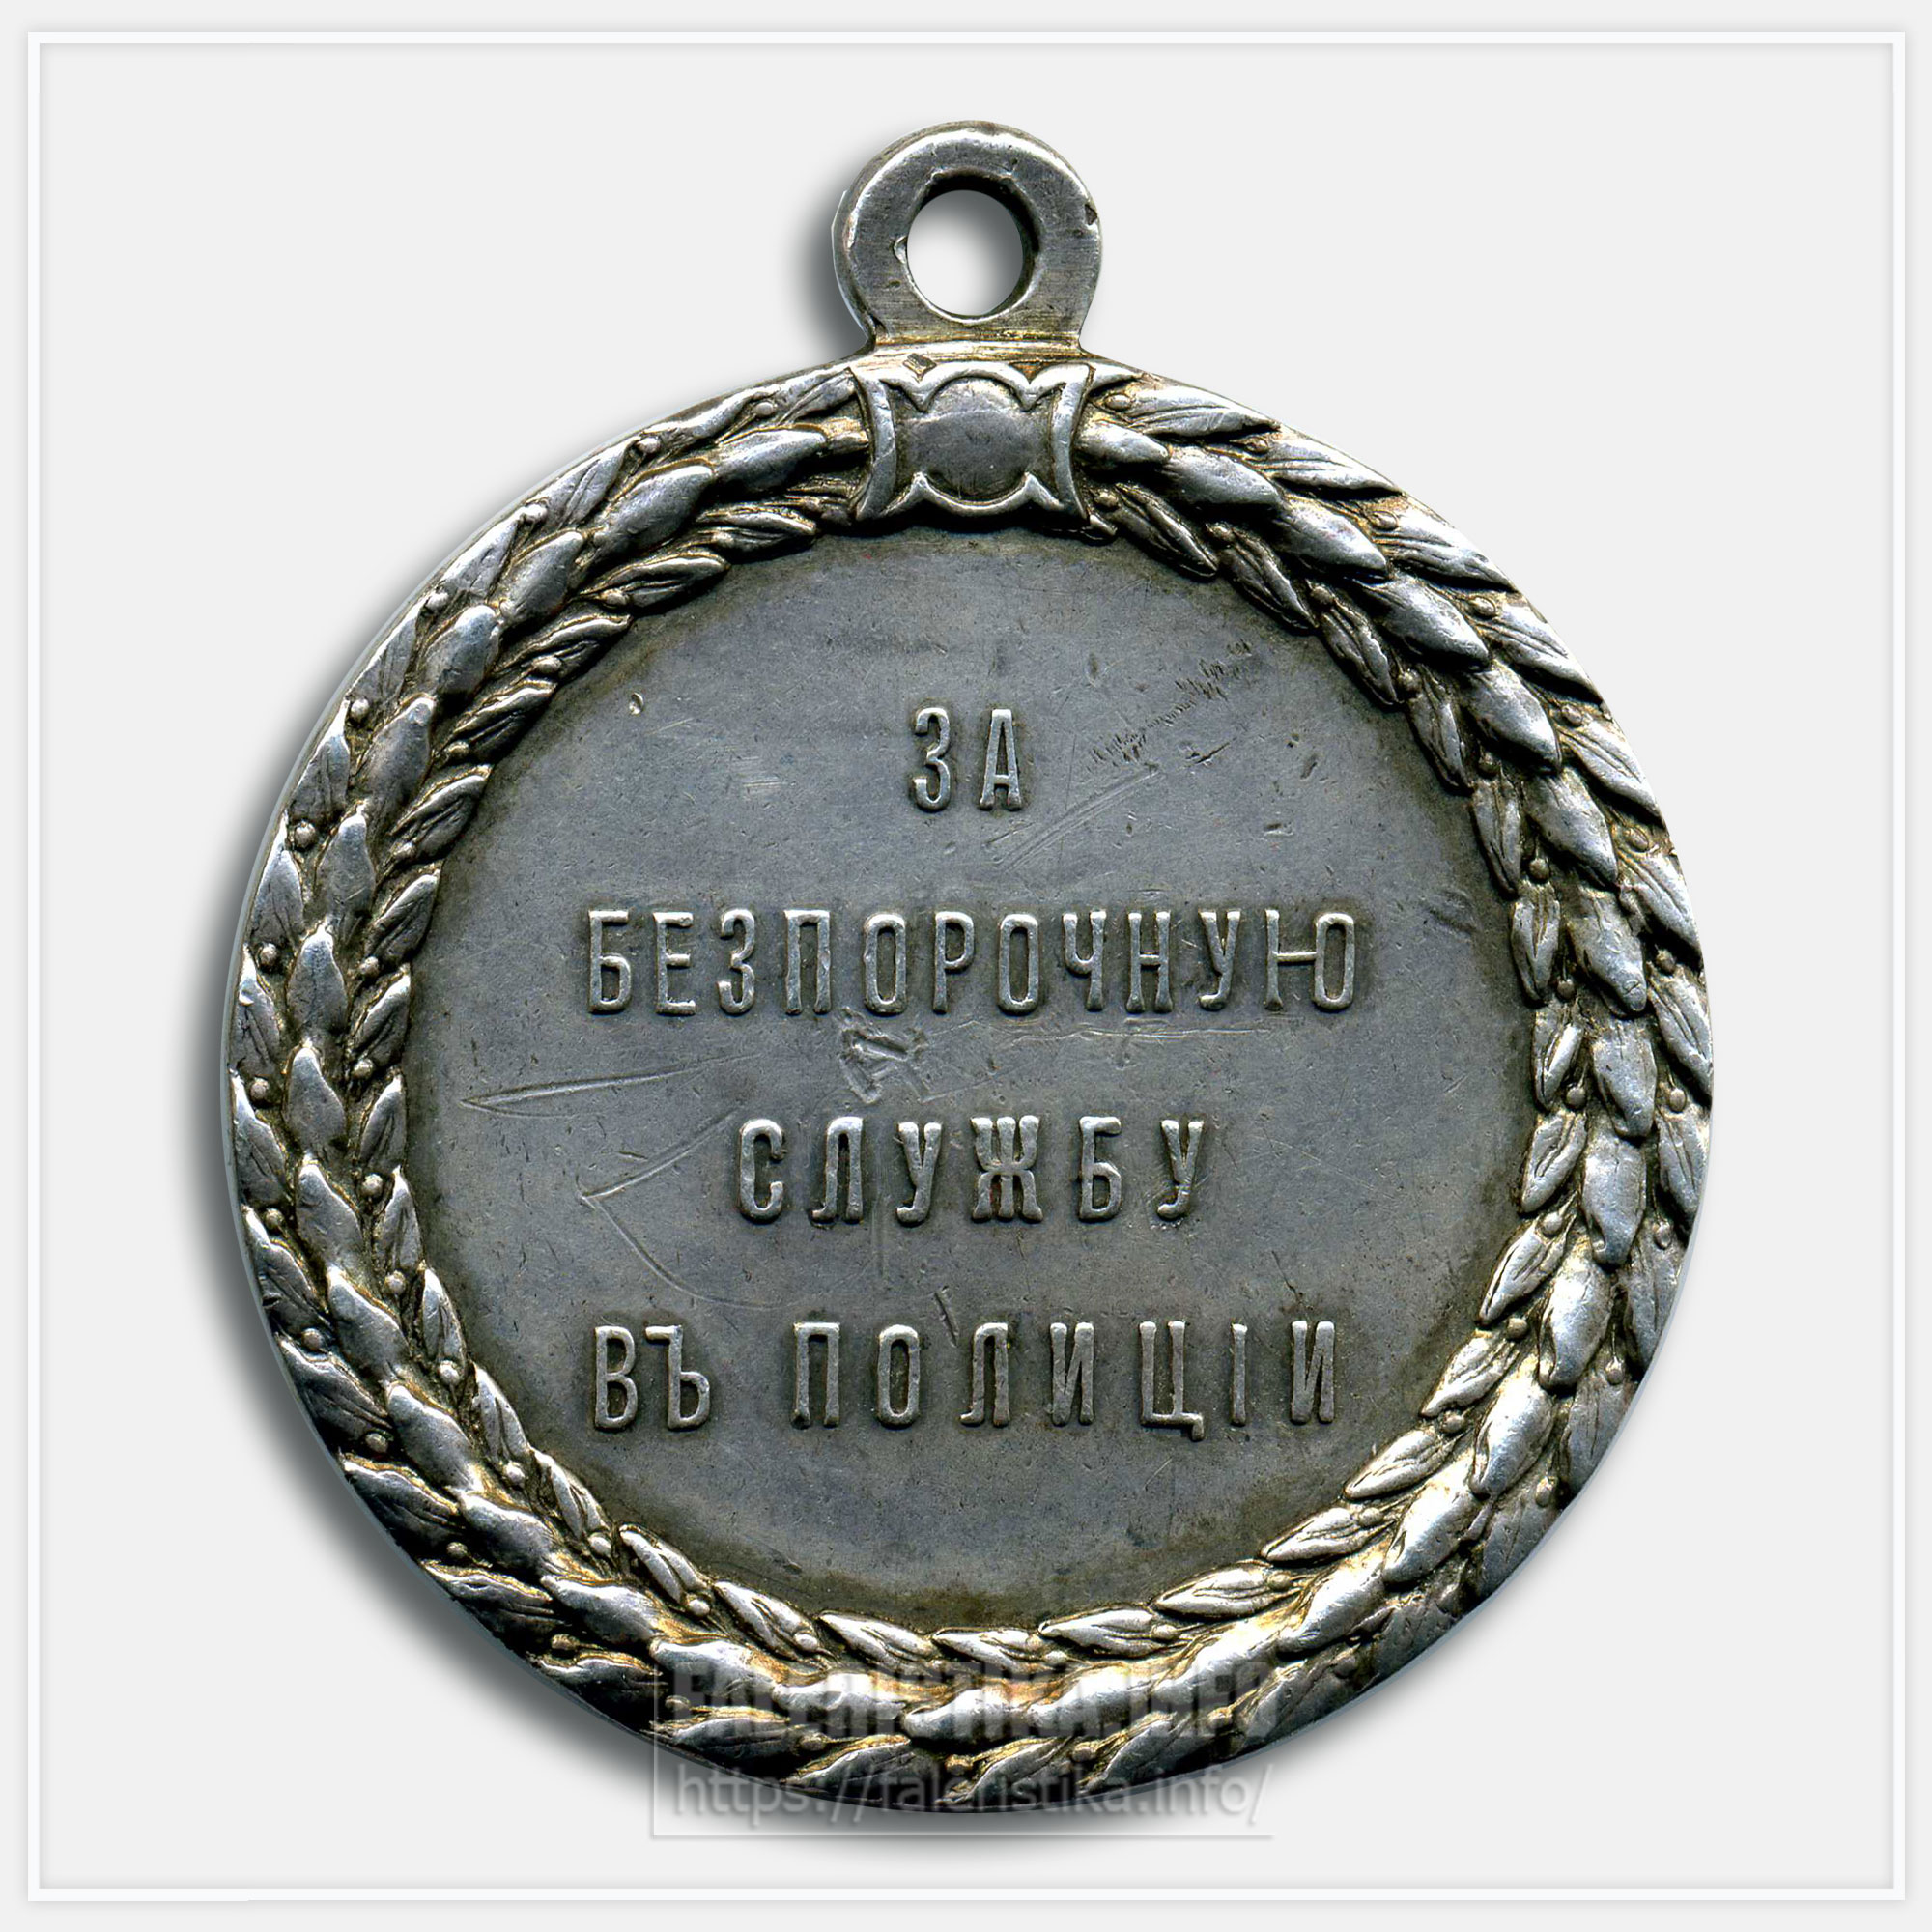 Медаль «За беспорочную службу в полиции» Николай II